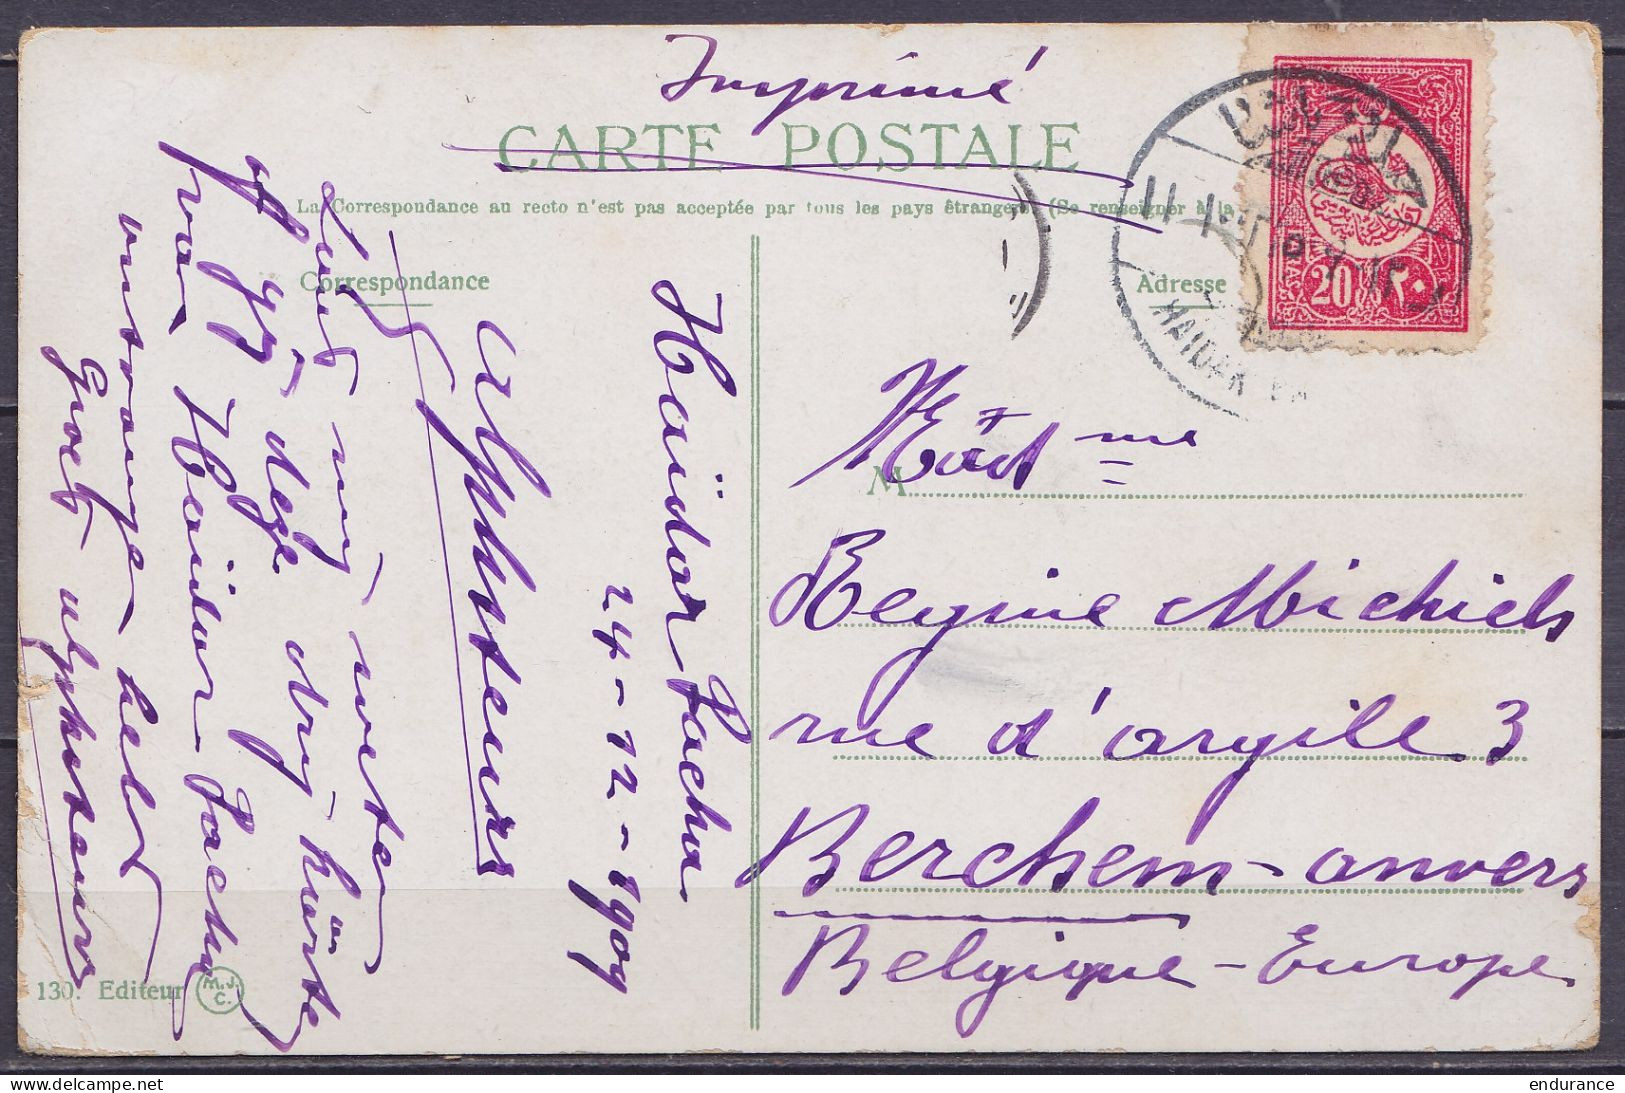 Turquie - CP Colorisé Constantinople Affr. 20p Càpt HAÏDAR PACHA /24-12-1909 (Haydarpaşa) Pour BERCHEM Anvers - Covers & Documents